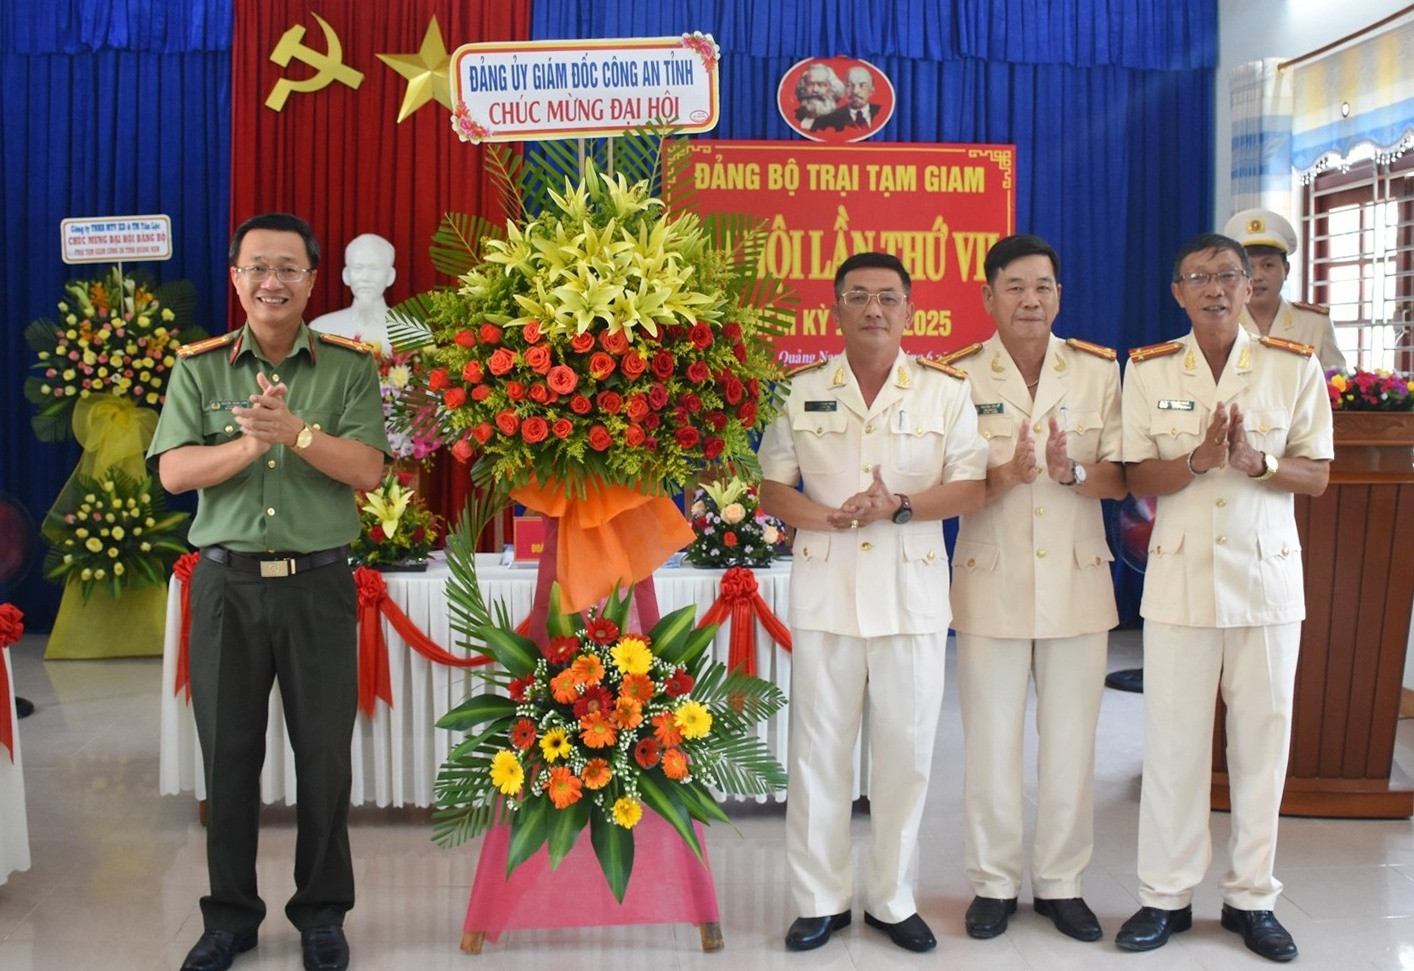 Thượng tá Nguyễn Thành Long - Phó Giám đốc Công an tỉnh tặng hoa chúc mừng đại hội. Ảnh: Q.H